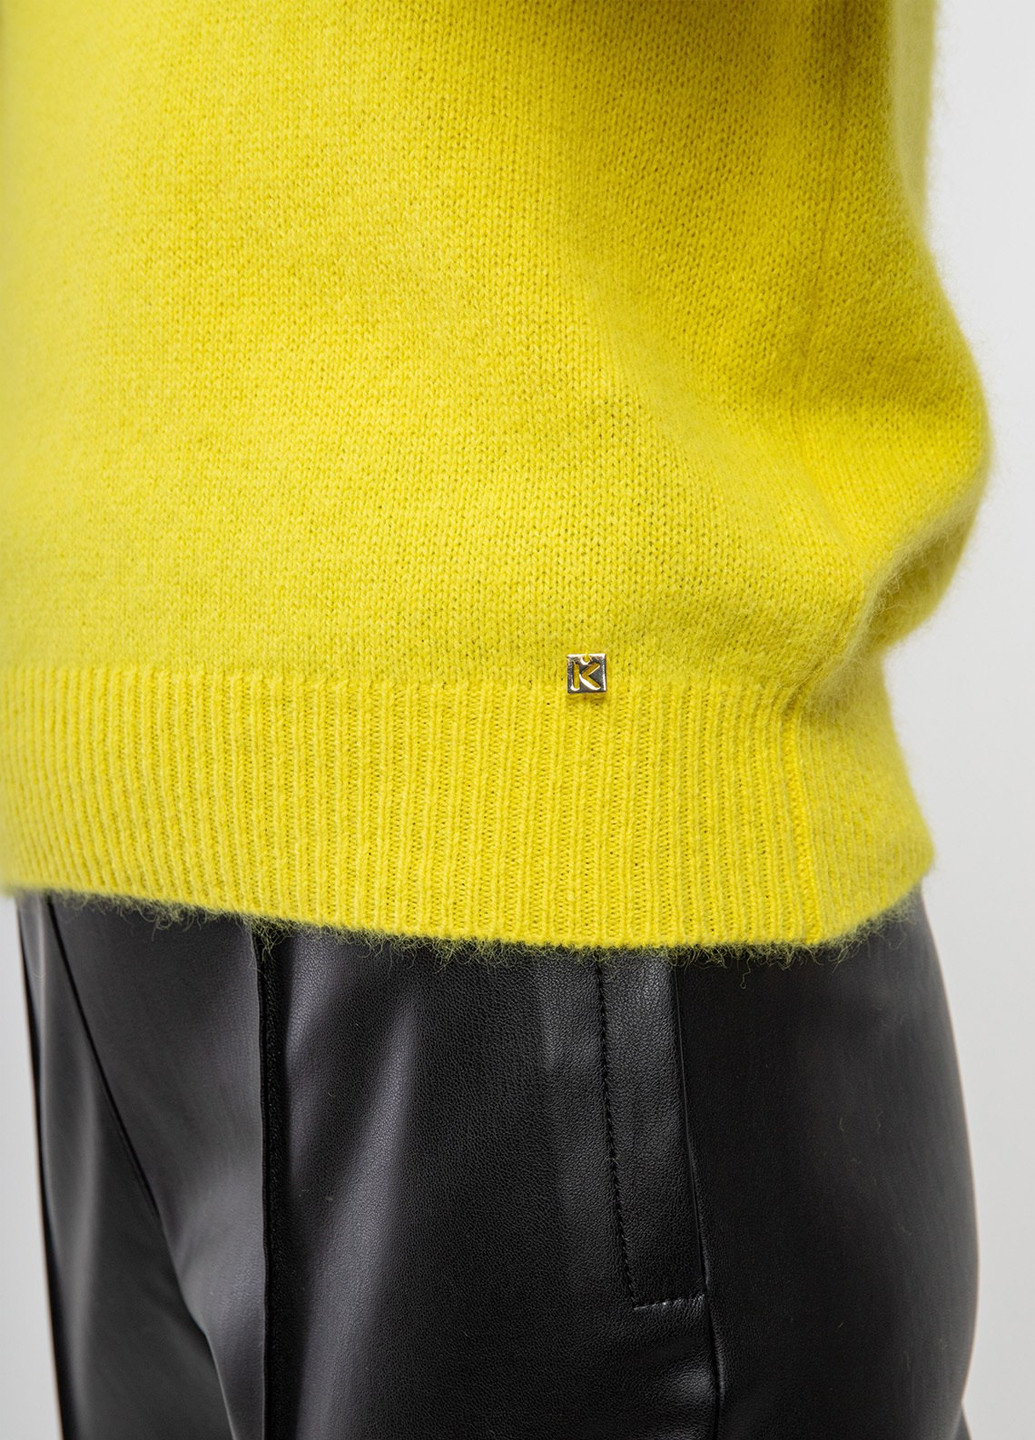 Желтый демисезонный свитер Kocca